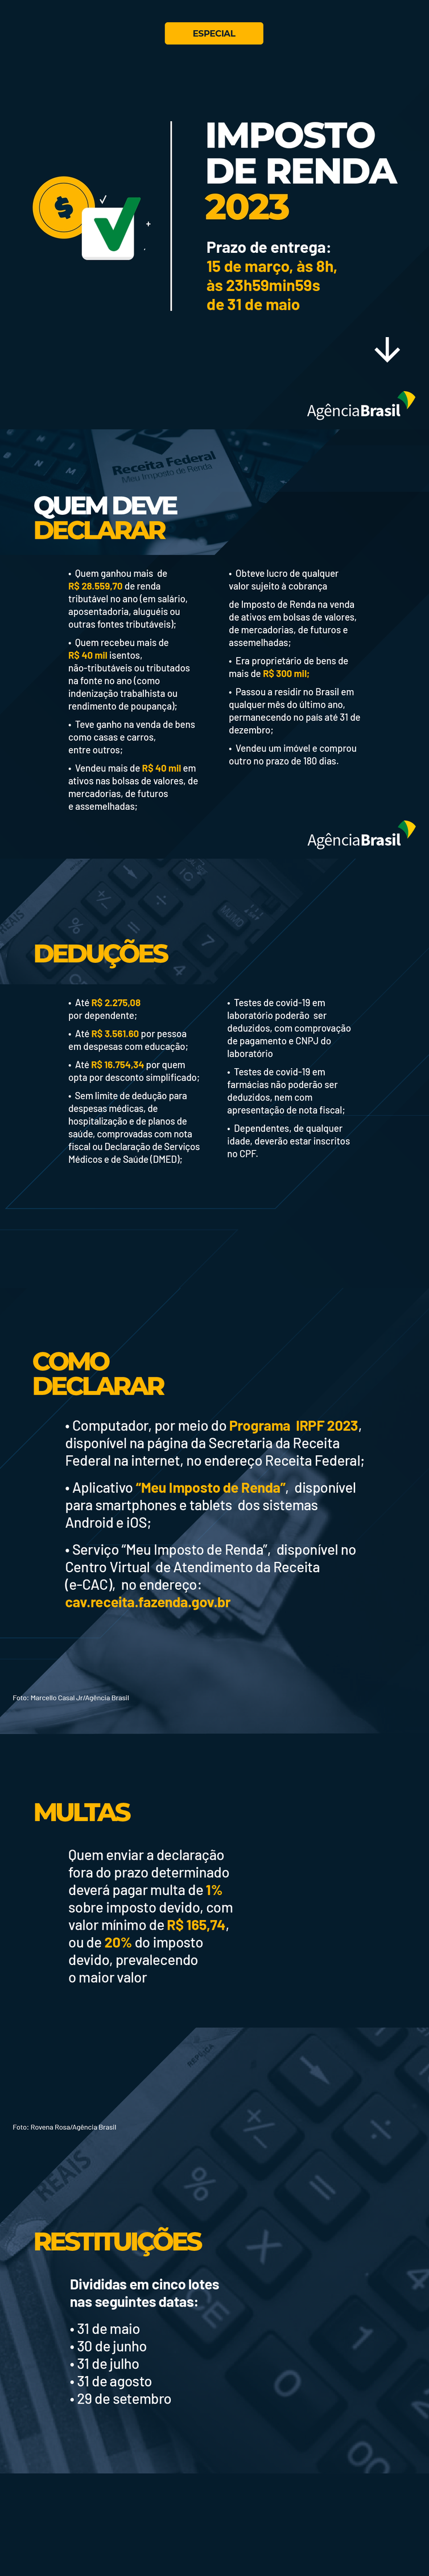 Jornal Ilustrado - Entenda as novidades na declaração do Imposto de Renda 2023